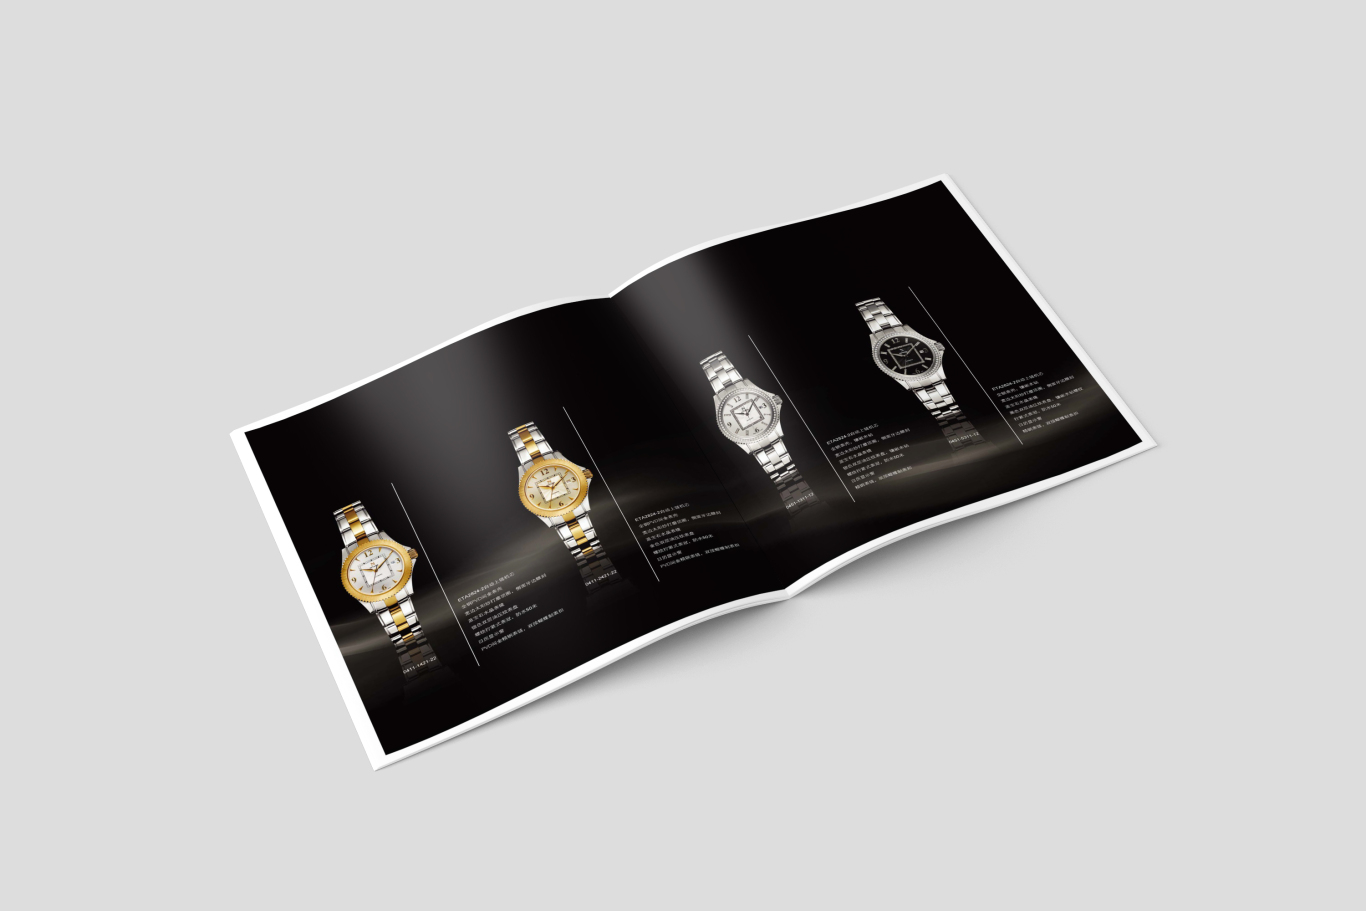 NIVADA尼维达凯旋门系列腕表产品画册设计图4